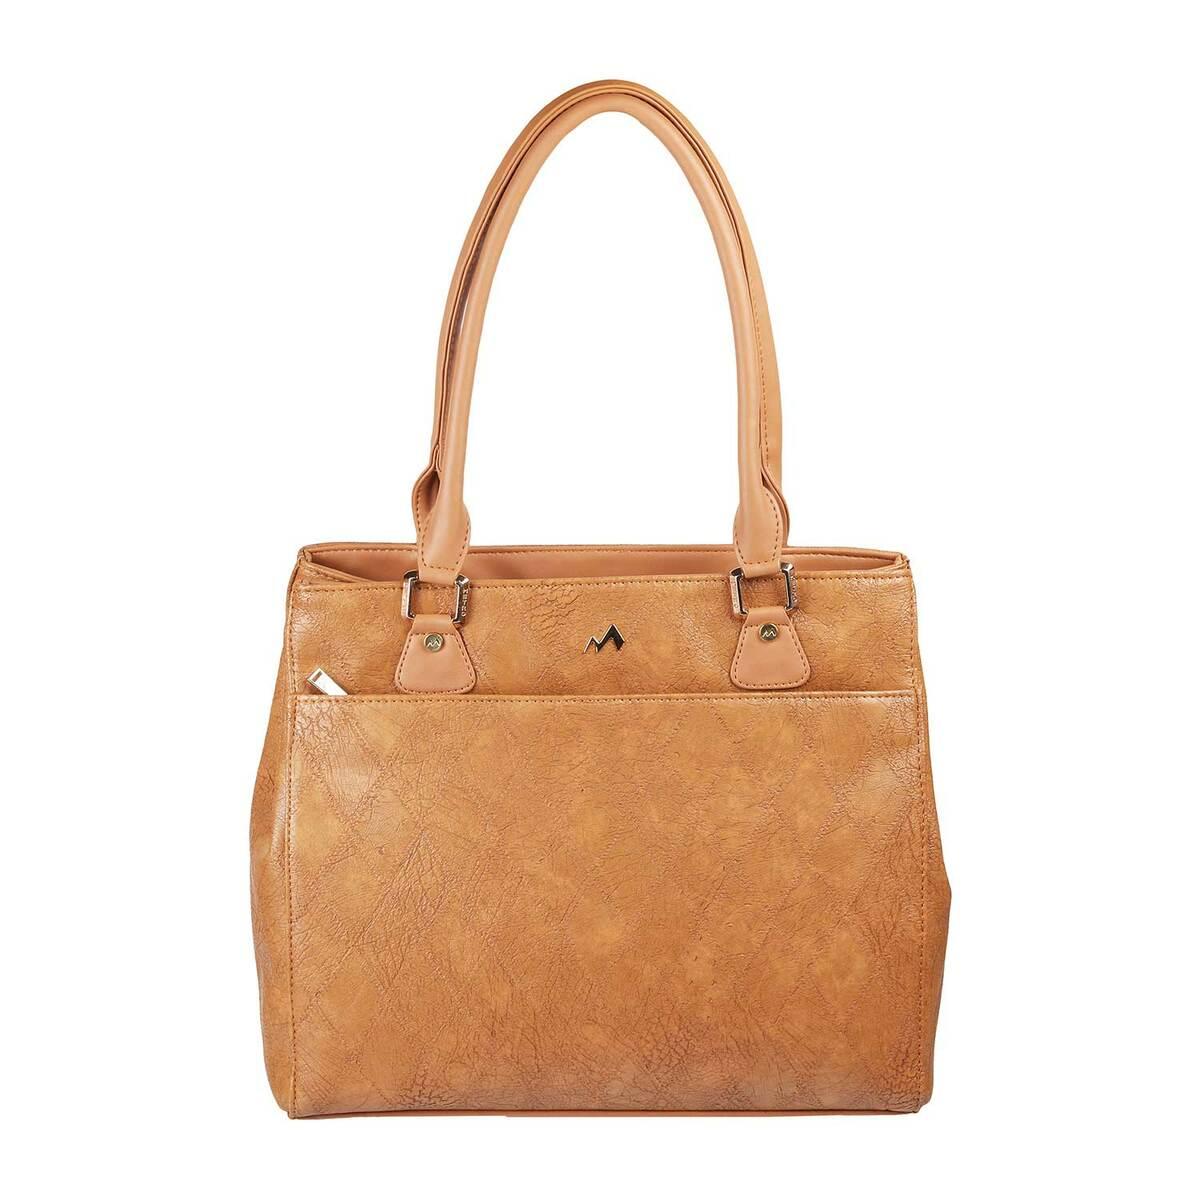 Ladies Purses And Handbags | Womens sling bag, Sling bag, Purses and  handbags